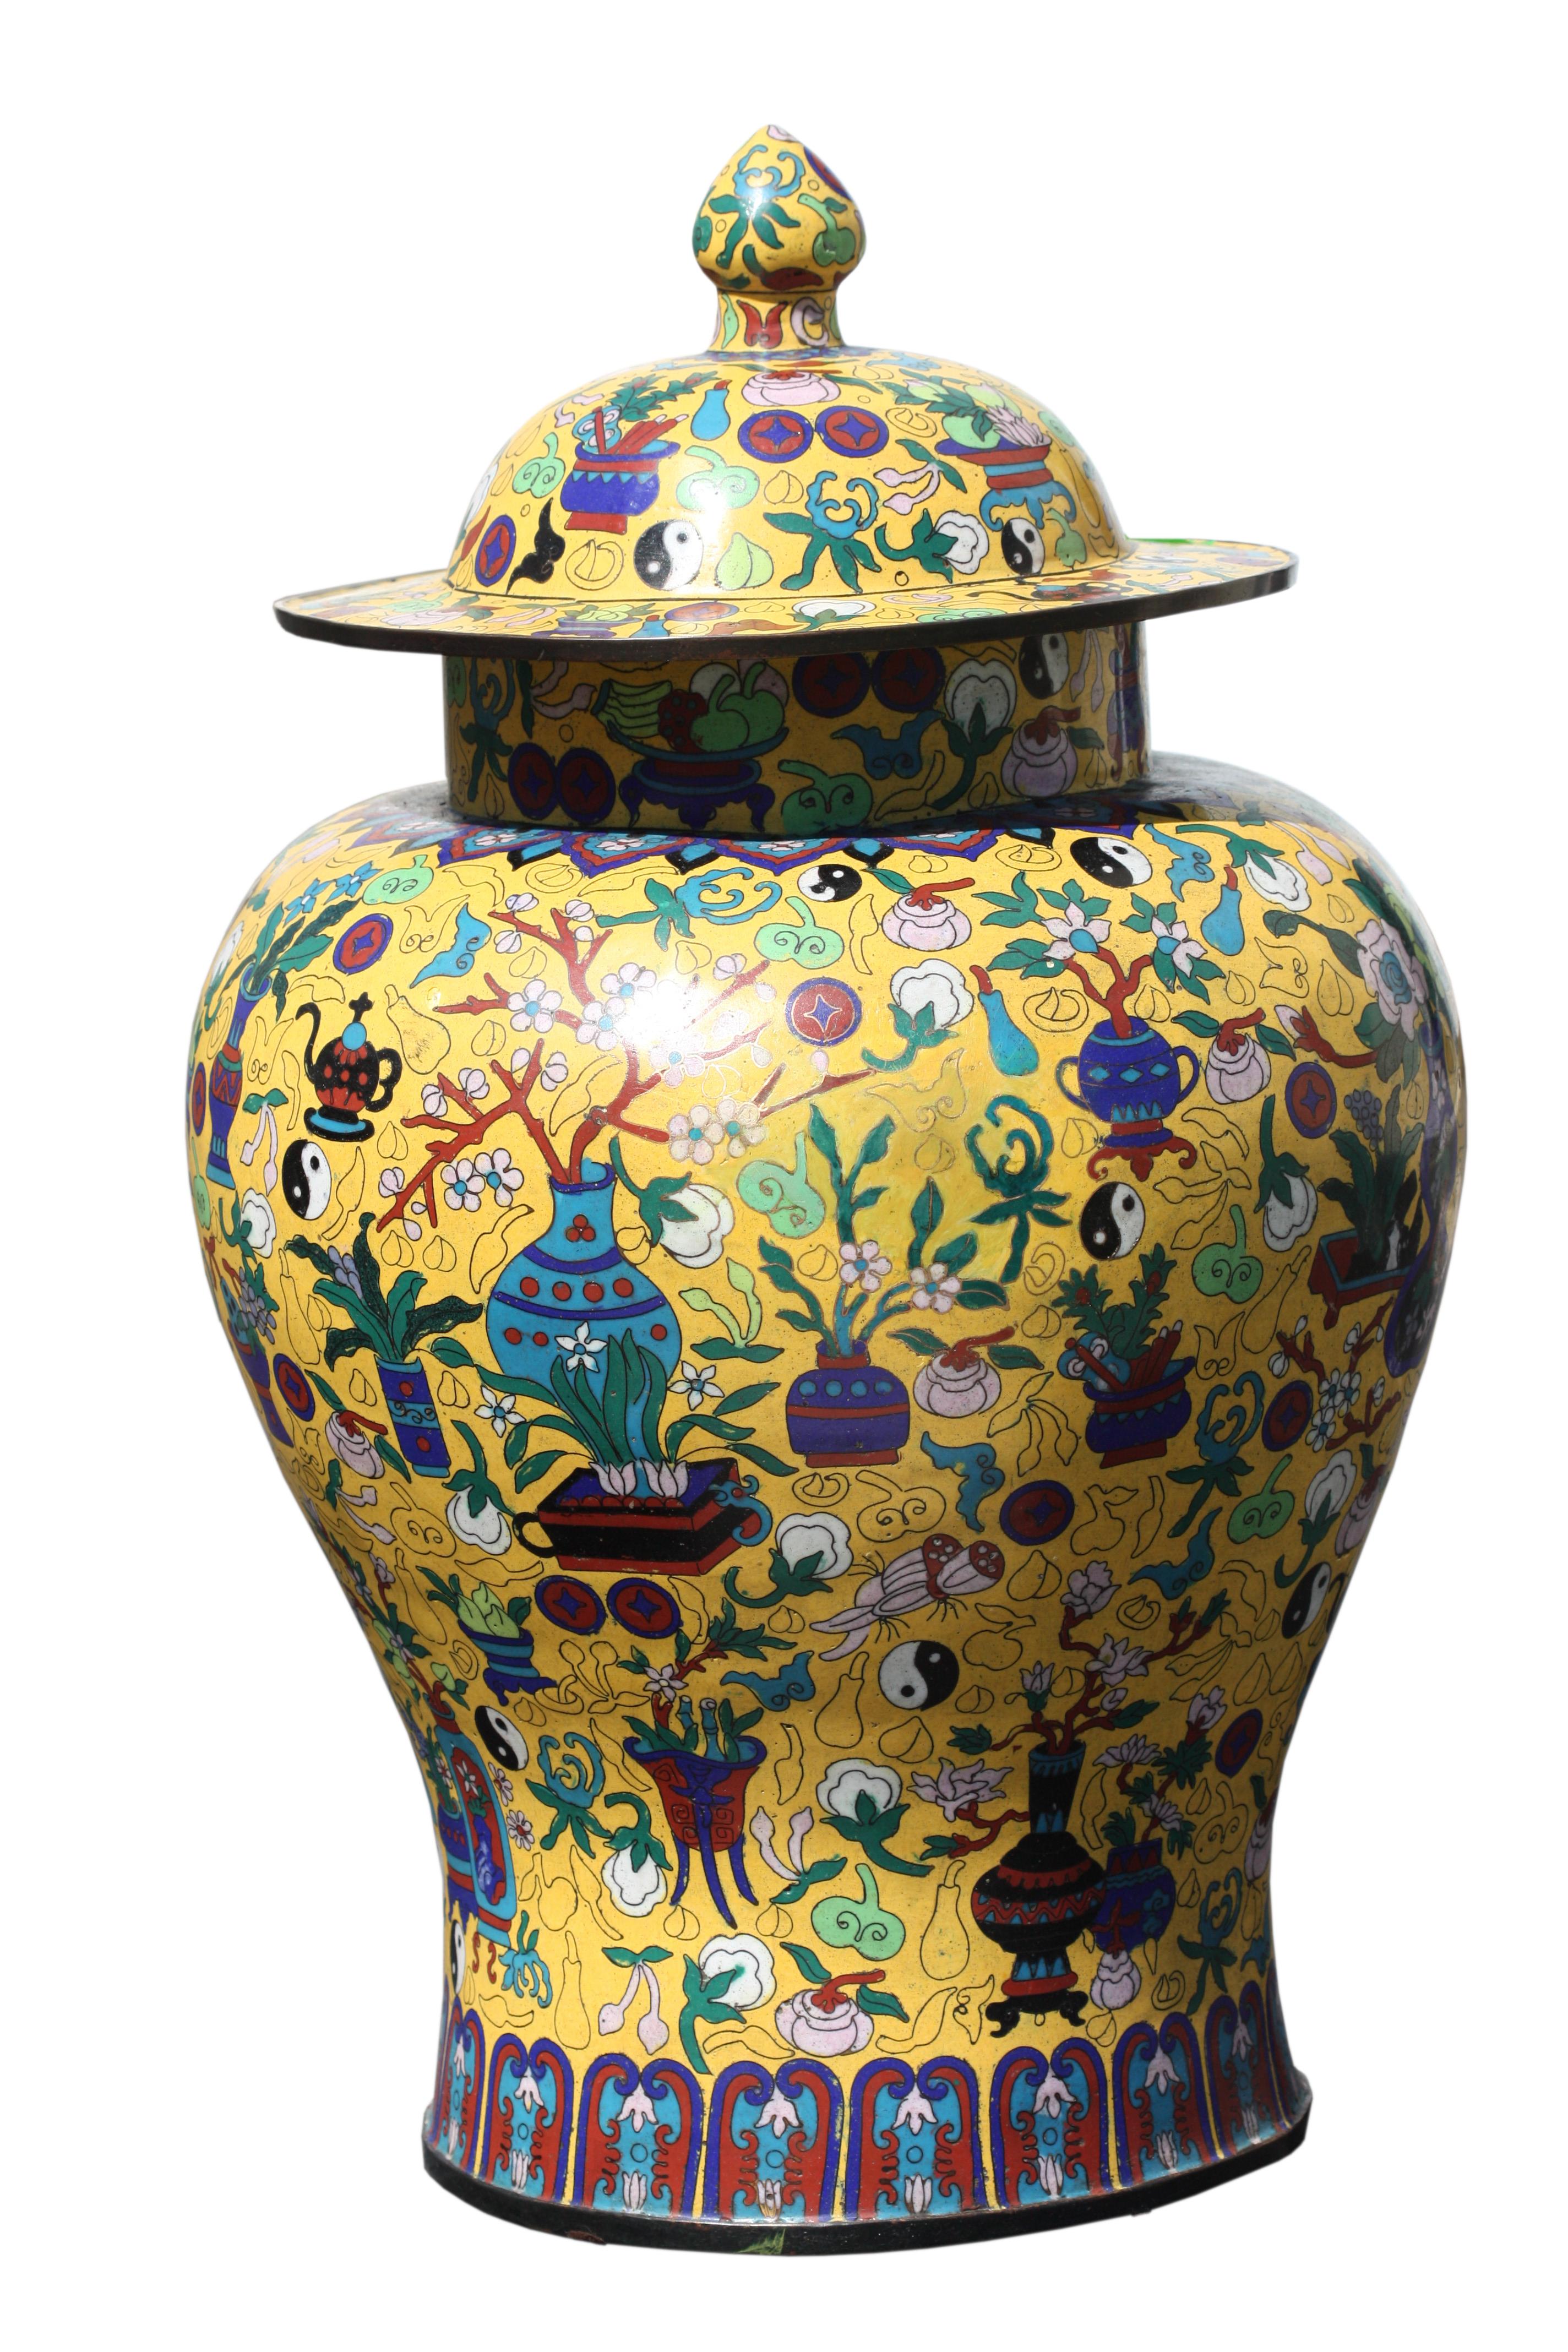 
Ein Paar große Cloisonne-Emaille-Vasen und Abdeckungen 
Chinesisch, Ende 20. Jahrhundert
Leuchtend emaillierte Blumen in Rosa, Orange und Blau, mit auffliegenden Vögeln und Schmetterlingen auf einem zartgelben Grund aus kleinen Wolkenformen.